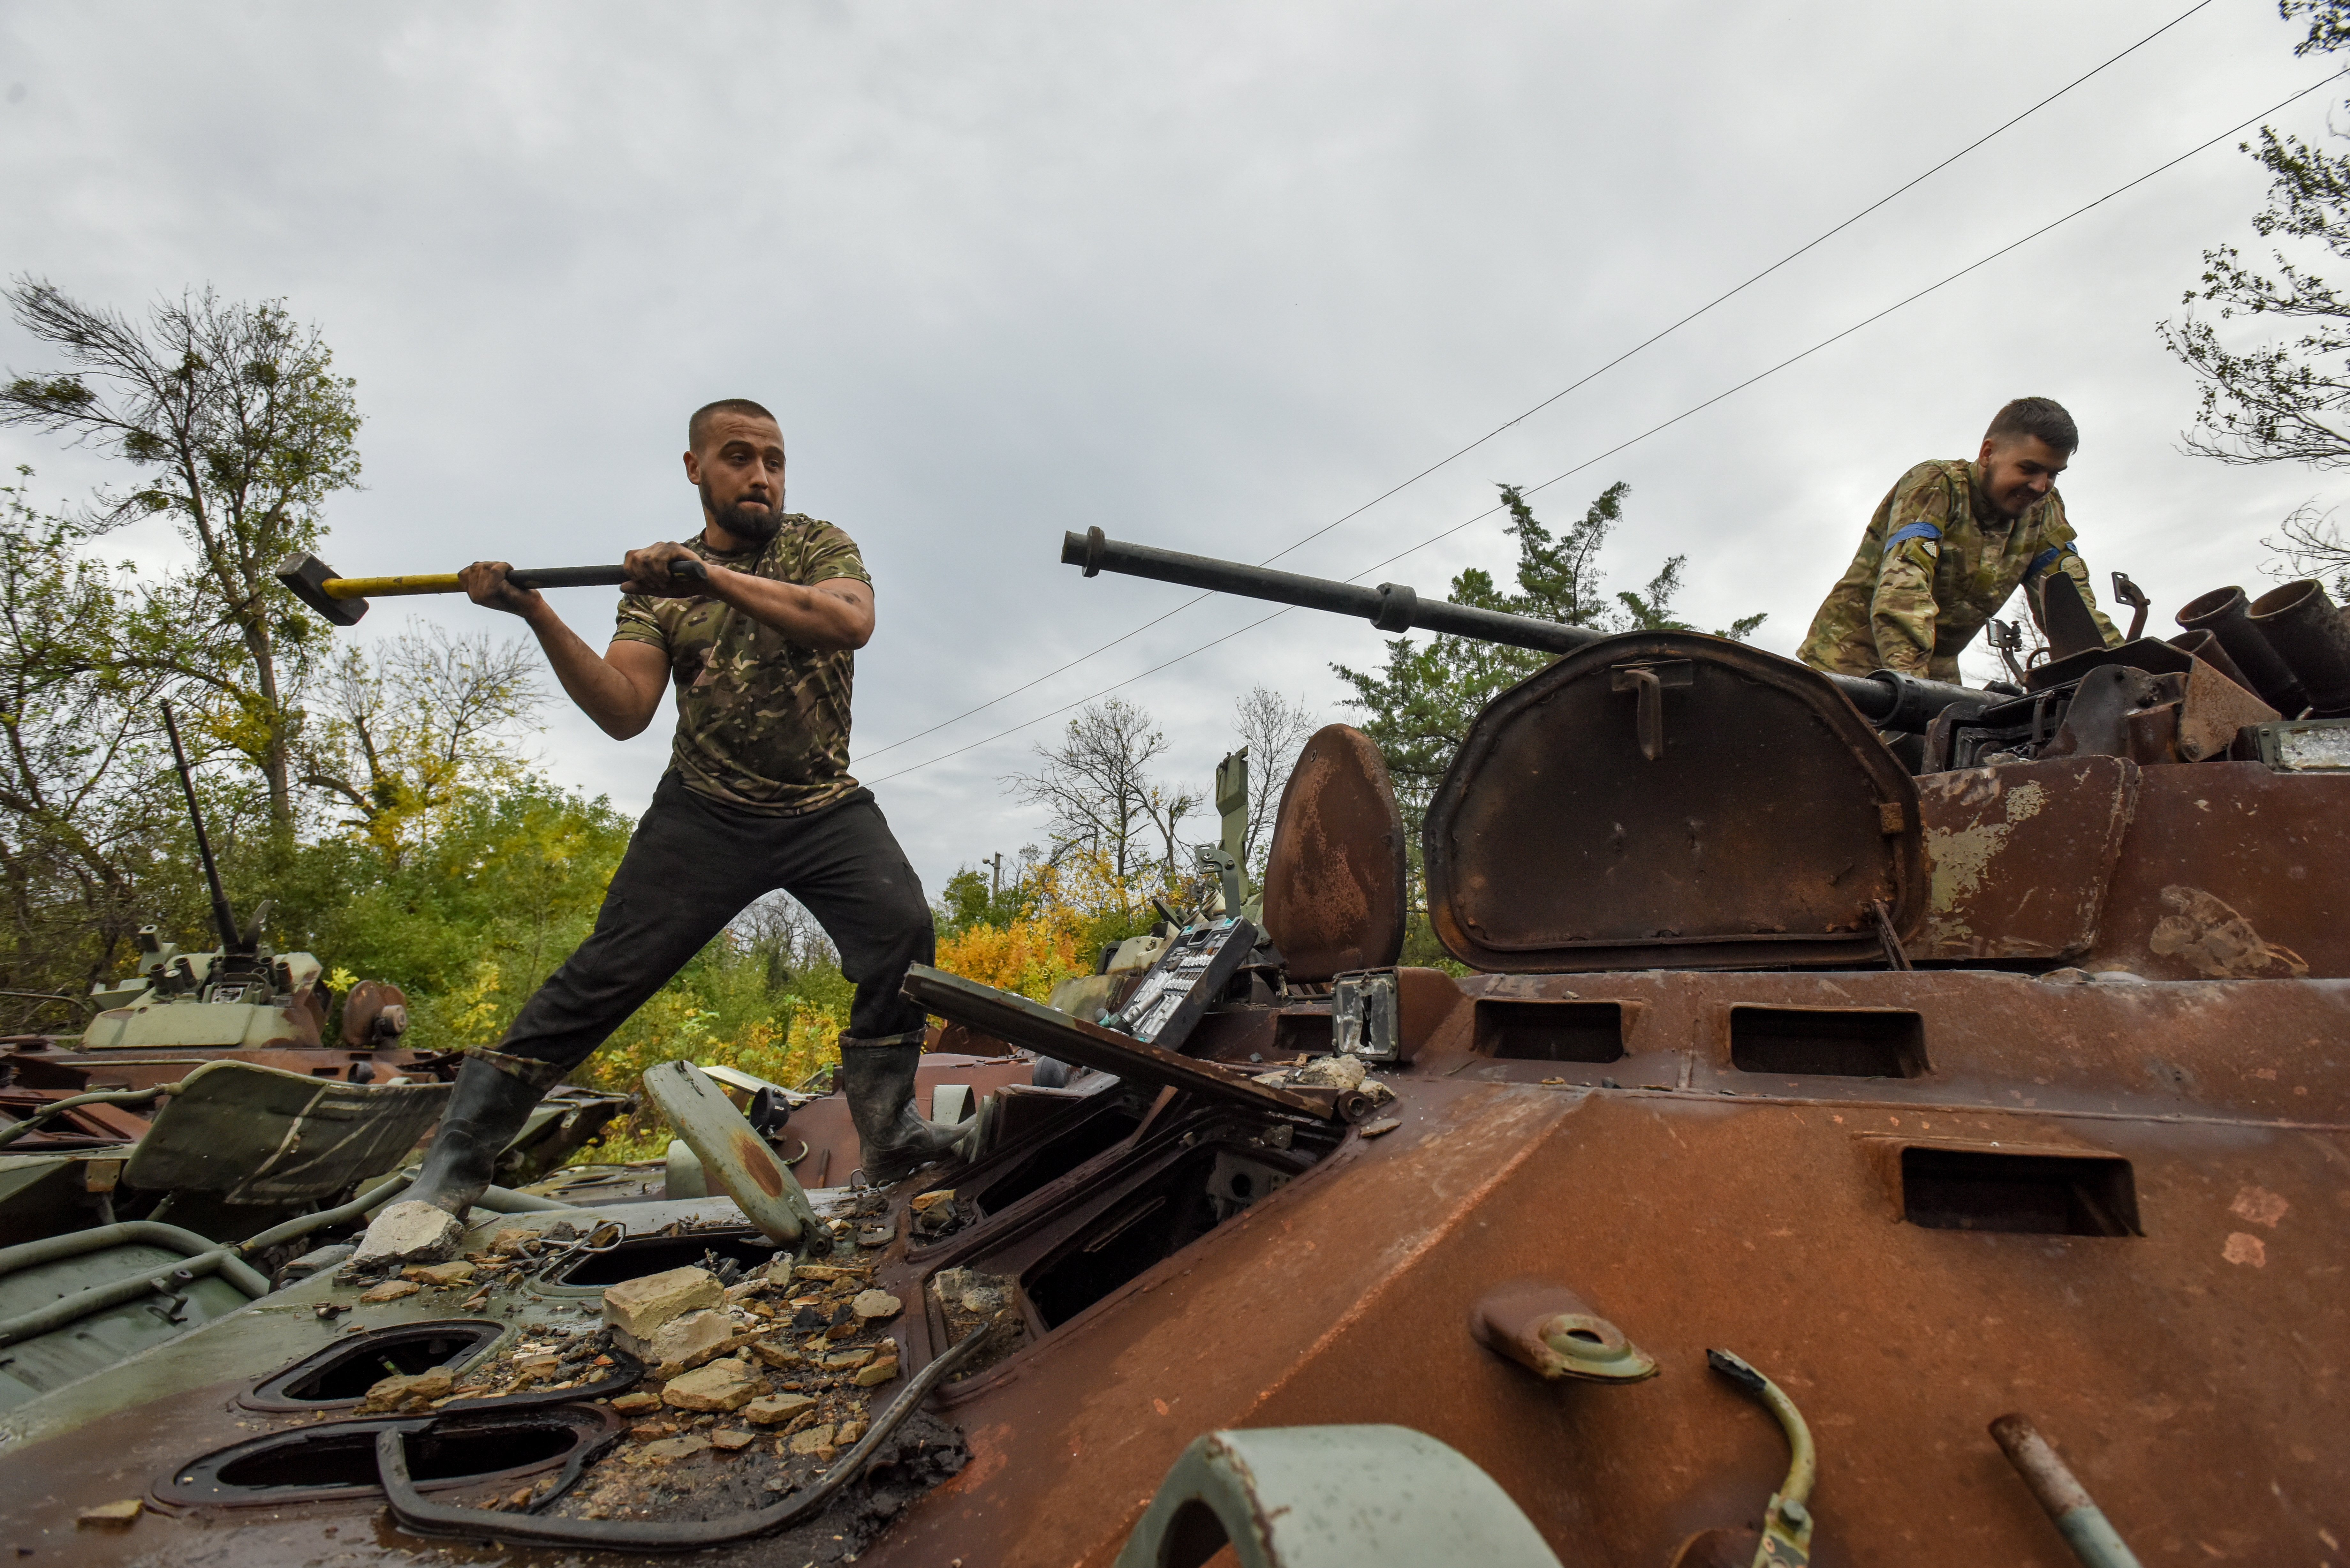 Rússia controla menys territori ara que quan va començar la invasió a Ucraïna: què ha passat?